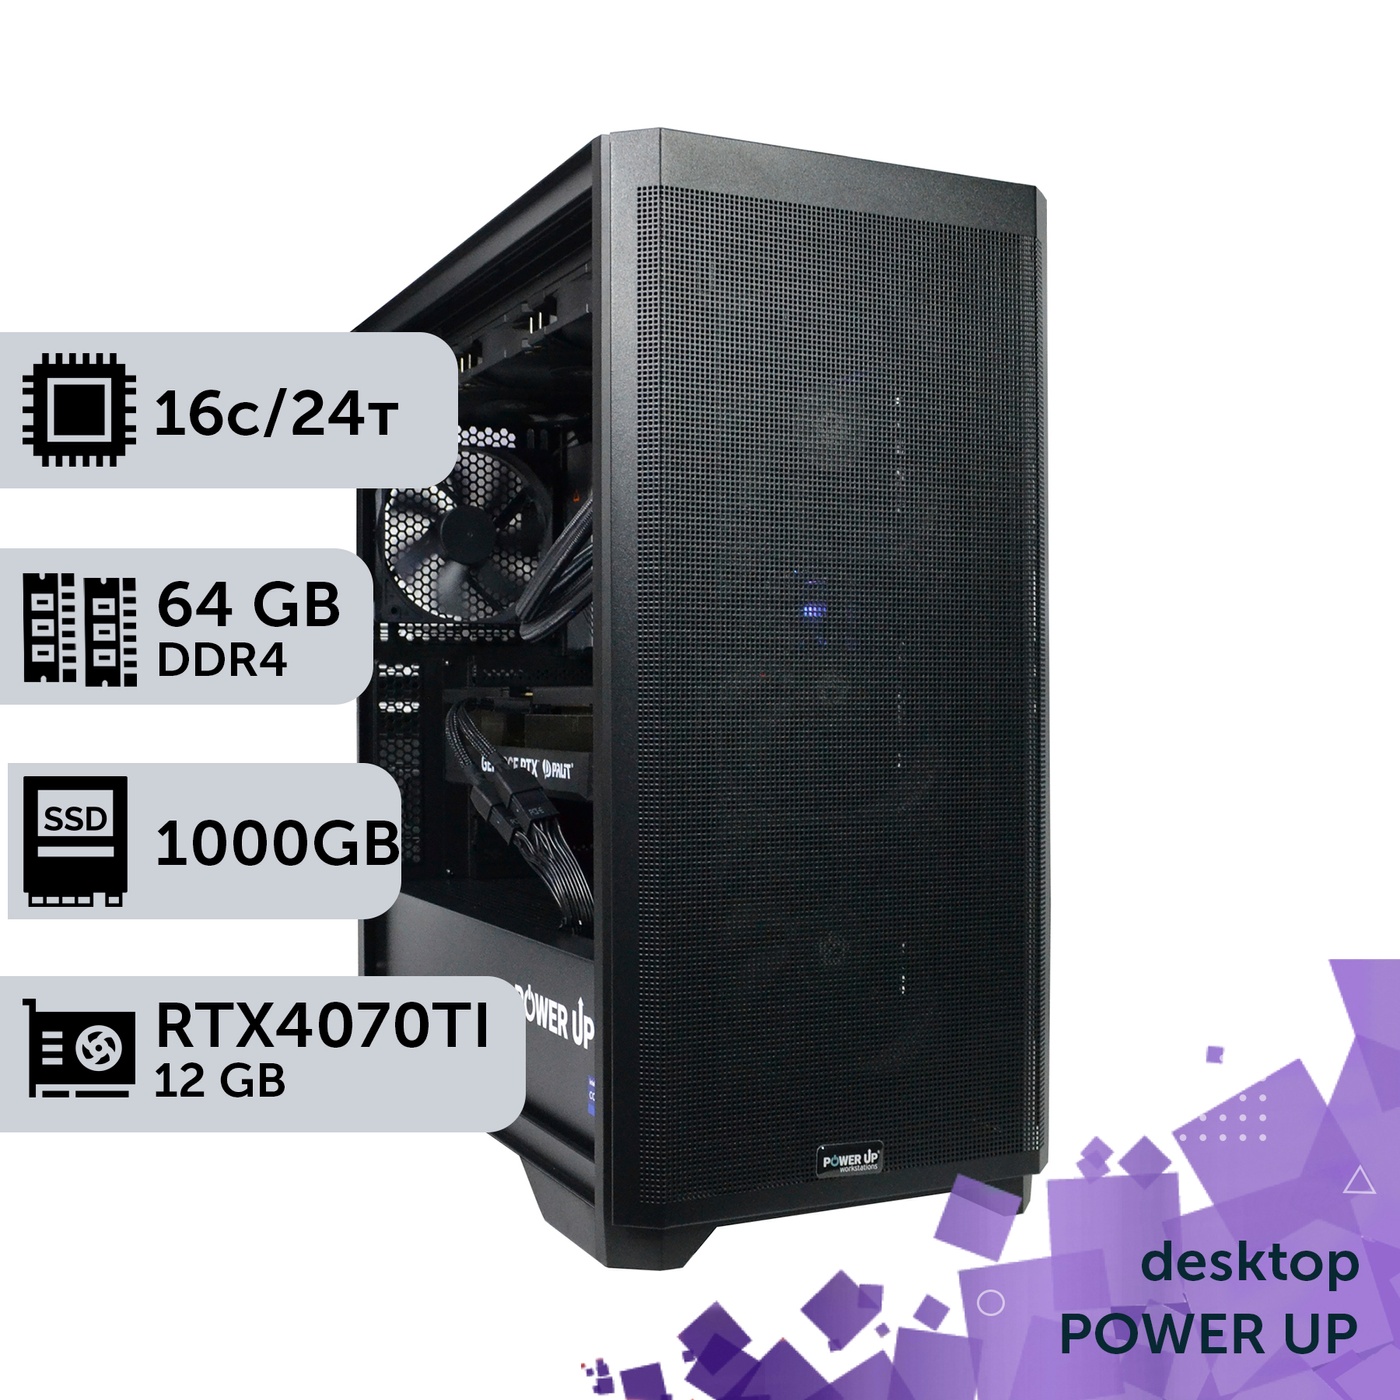 Робоча станція PowerUp Desktop #194 Core i7 13700K/64 GB/SSD 1TB/GeForce RTX 4070Ti 12GB